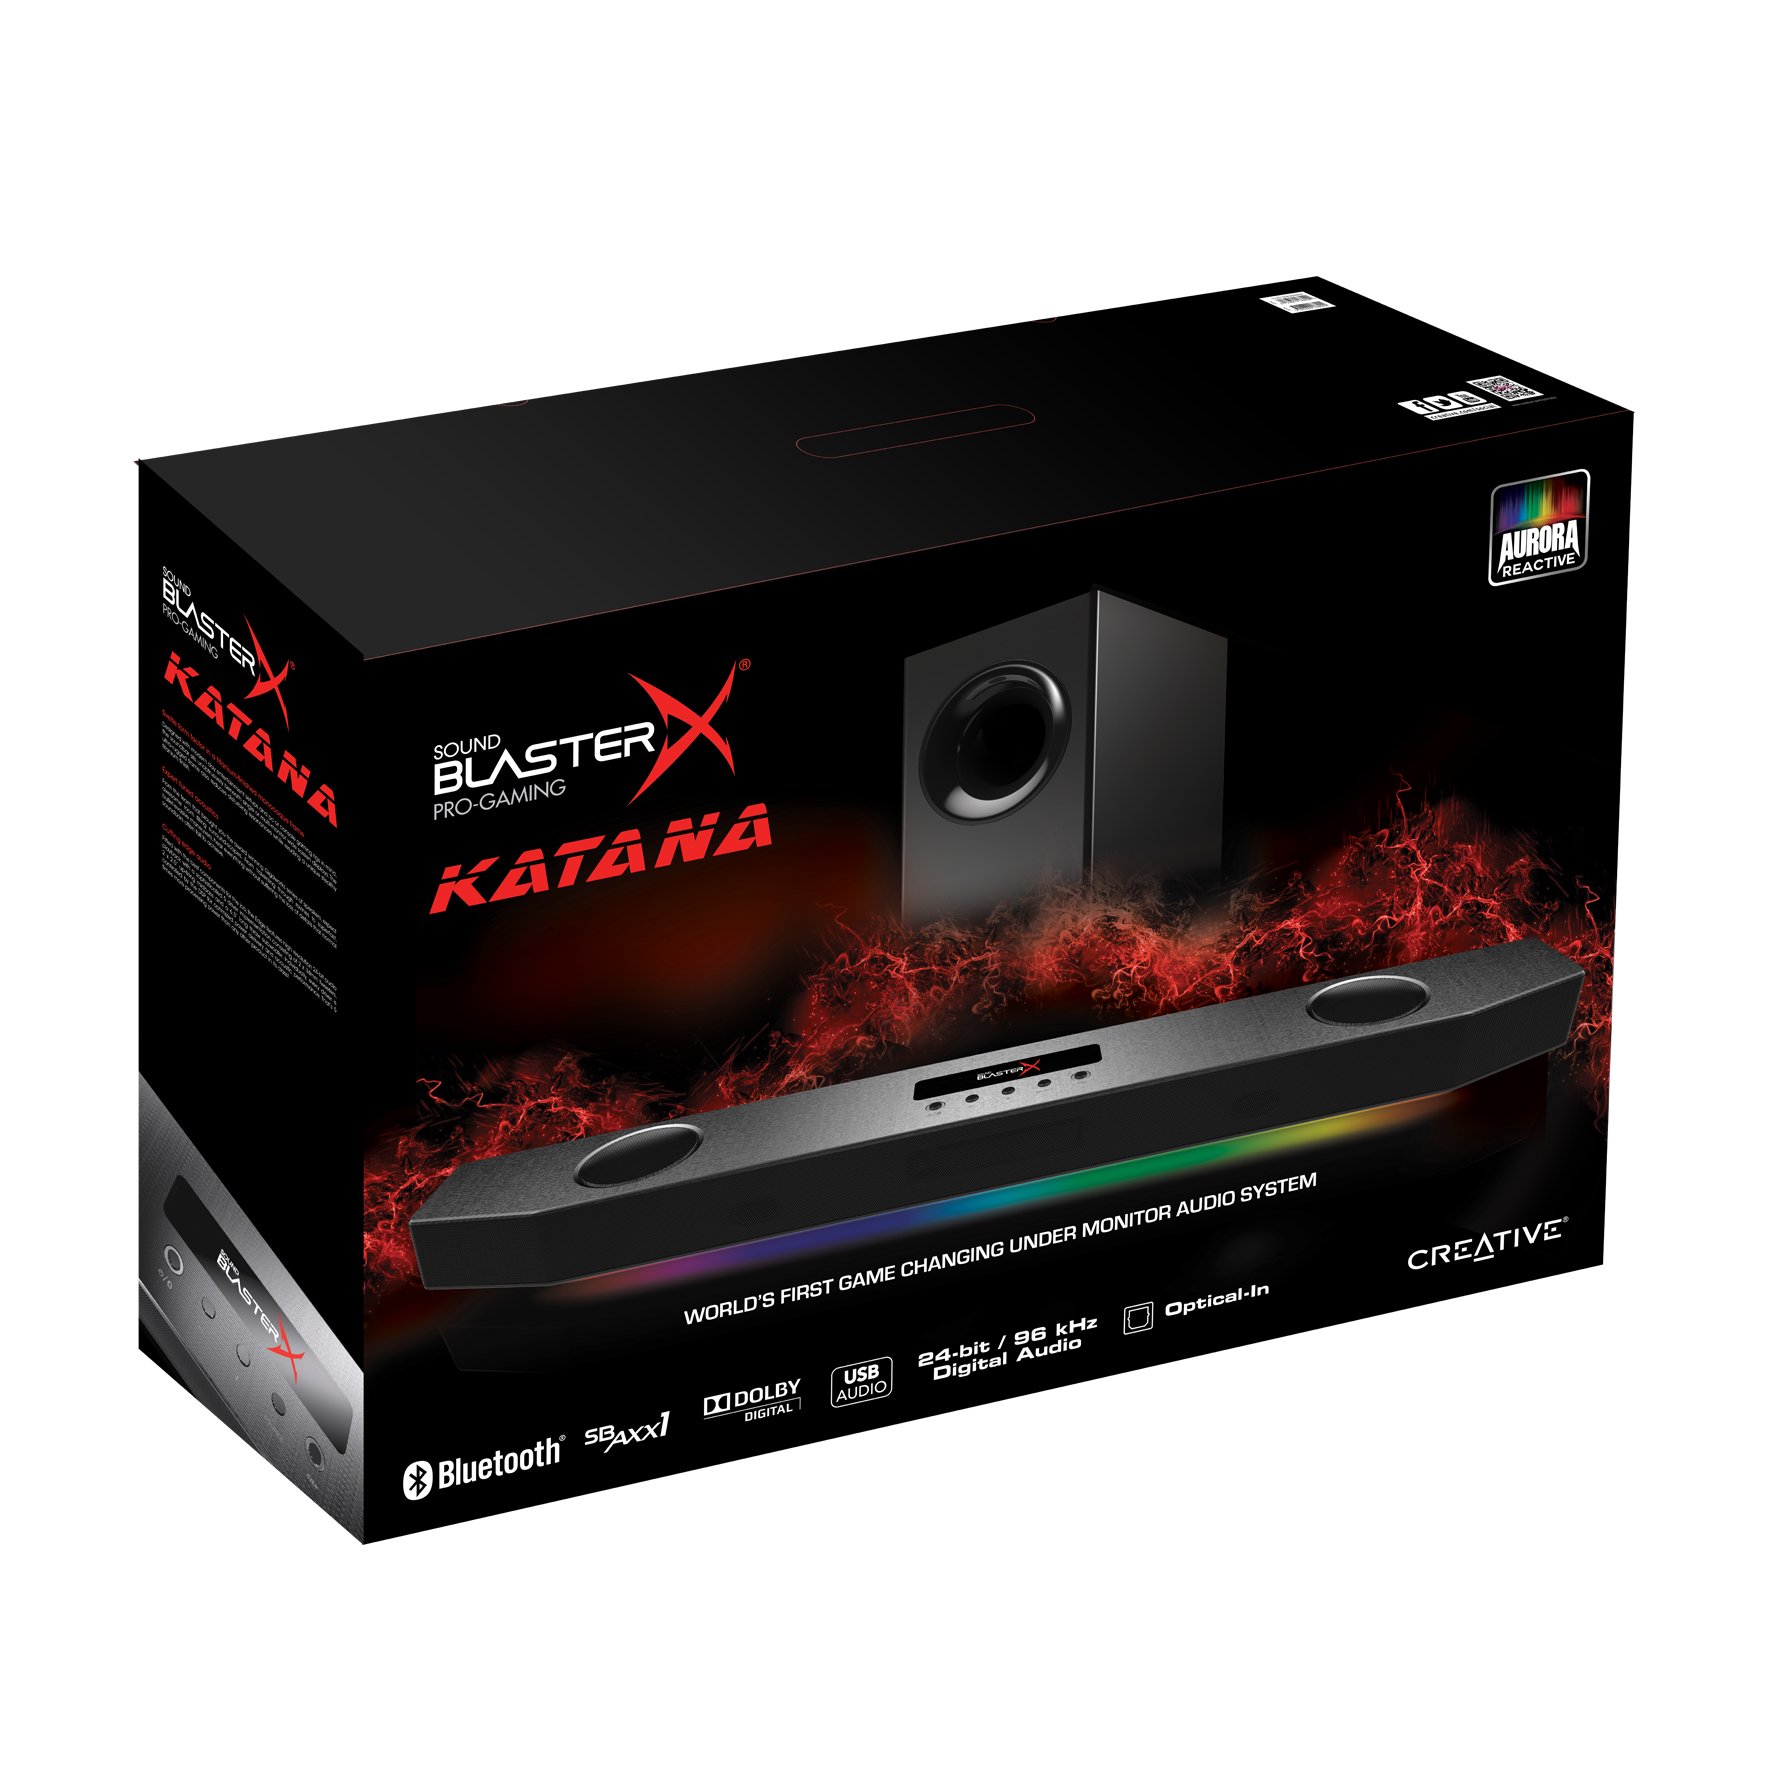 Image 6 : IFA 2016 : Sound BlasterX Katana, première barre de son gaming sous son moniteur